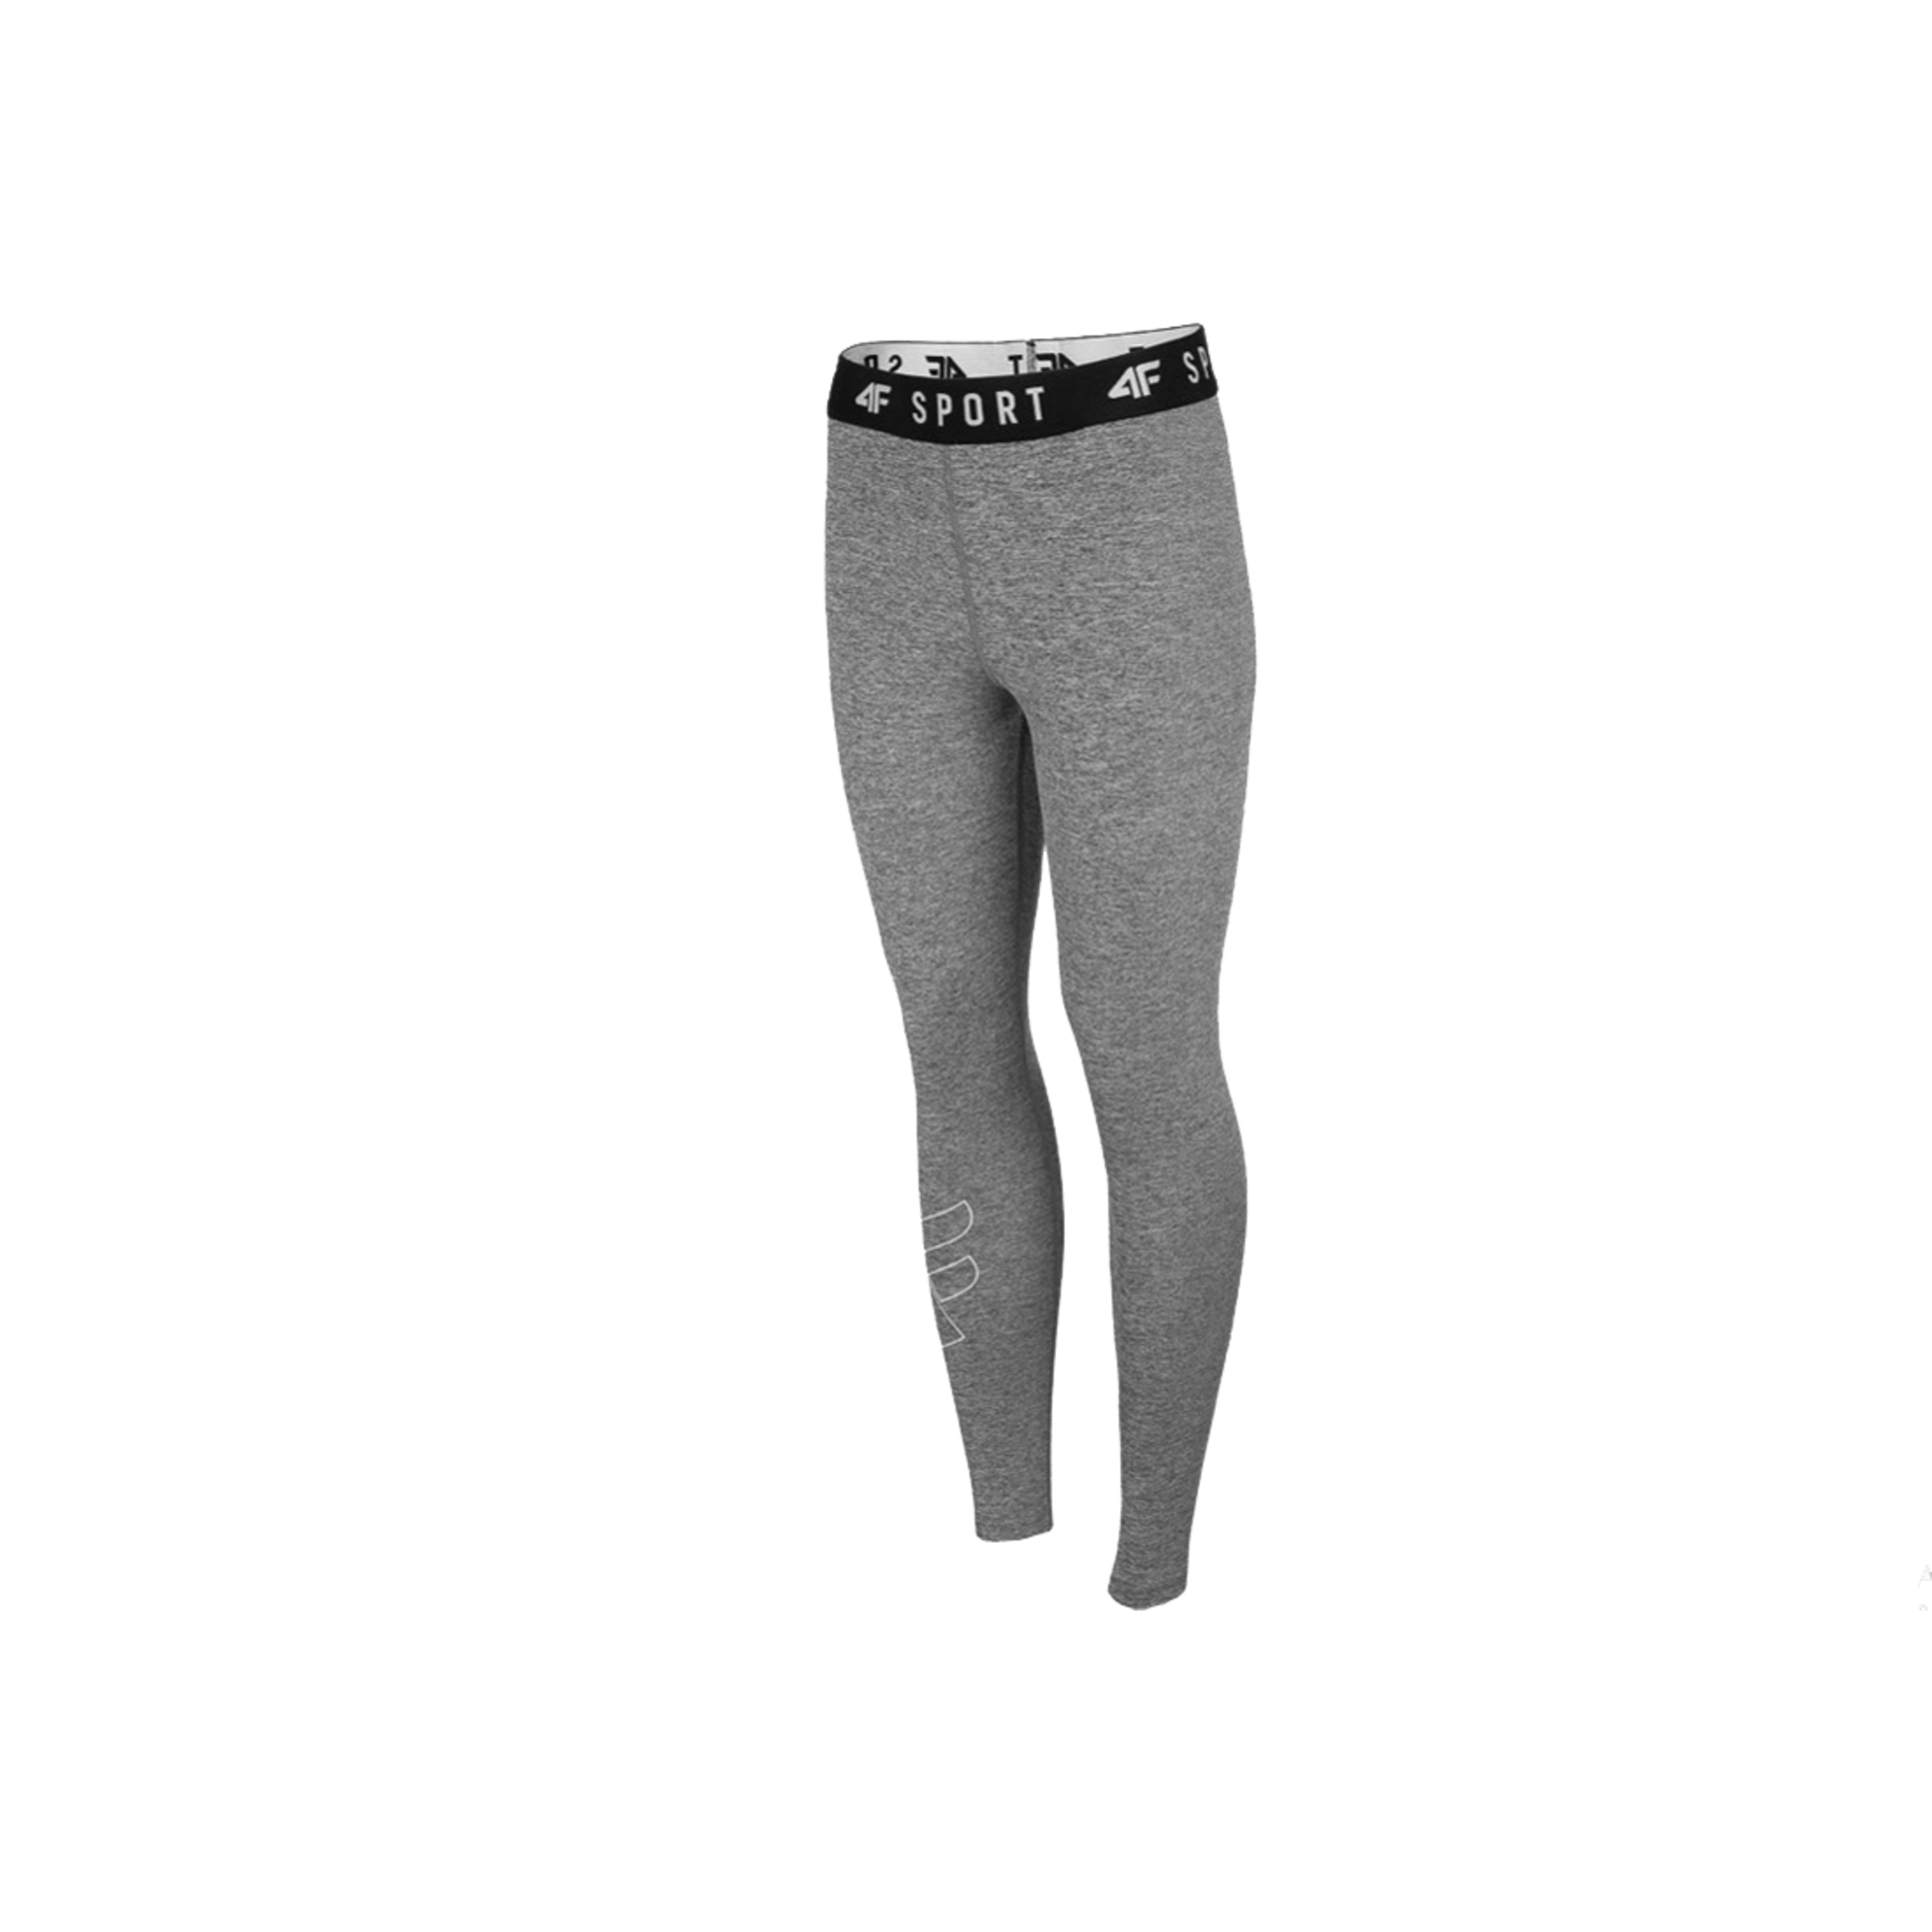 4f Women's Functional Trousers Nosh4-spdf001-25m - gris - 